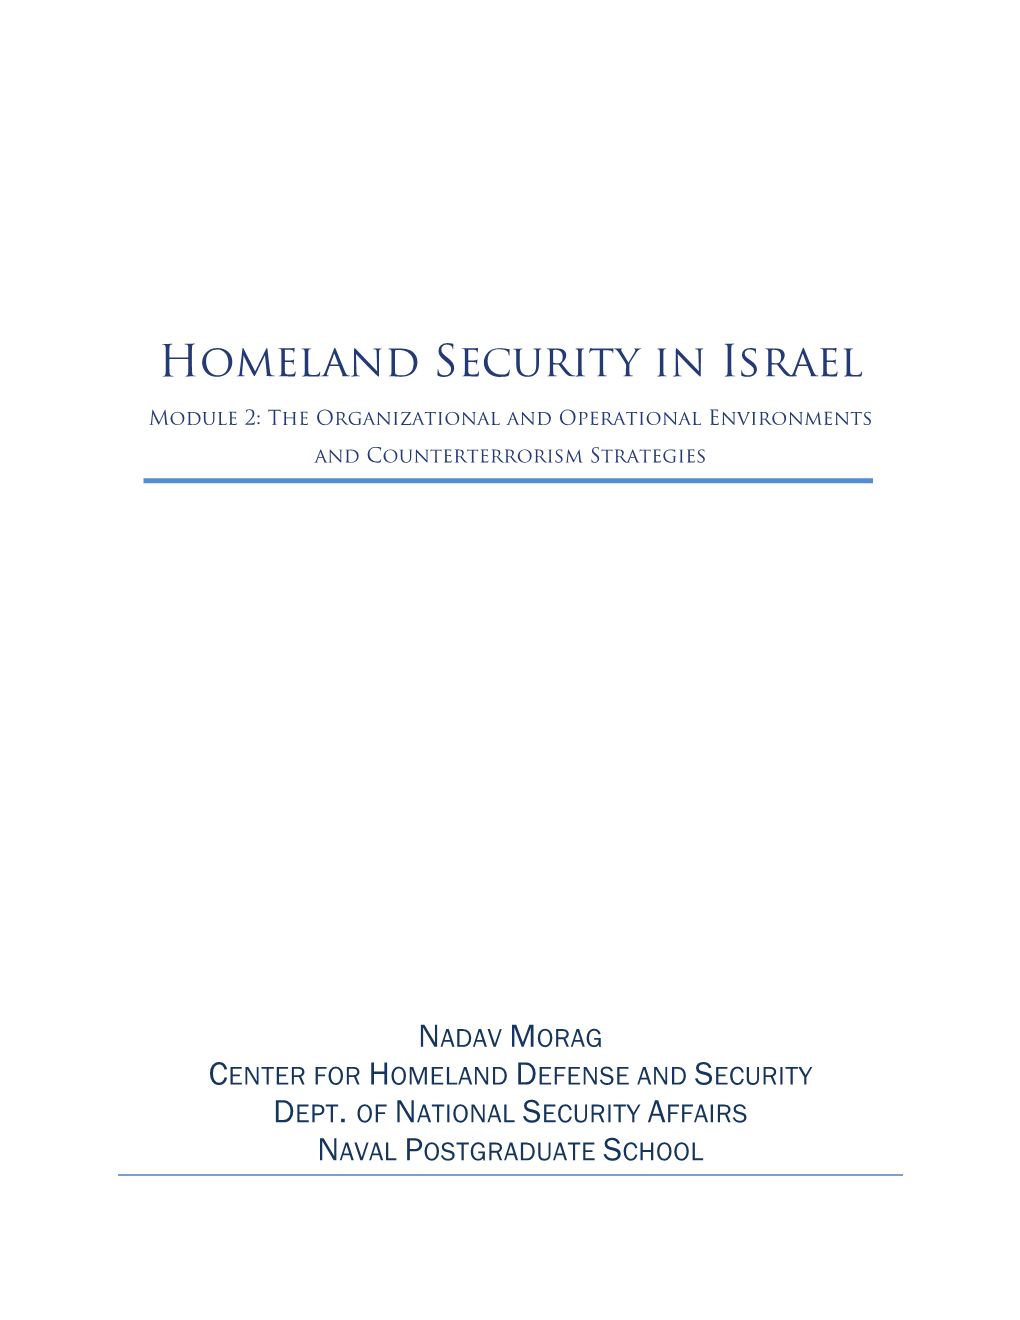 Homeland Security in Israel